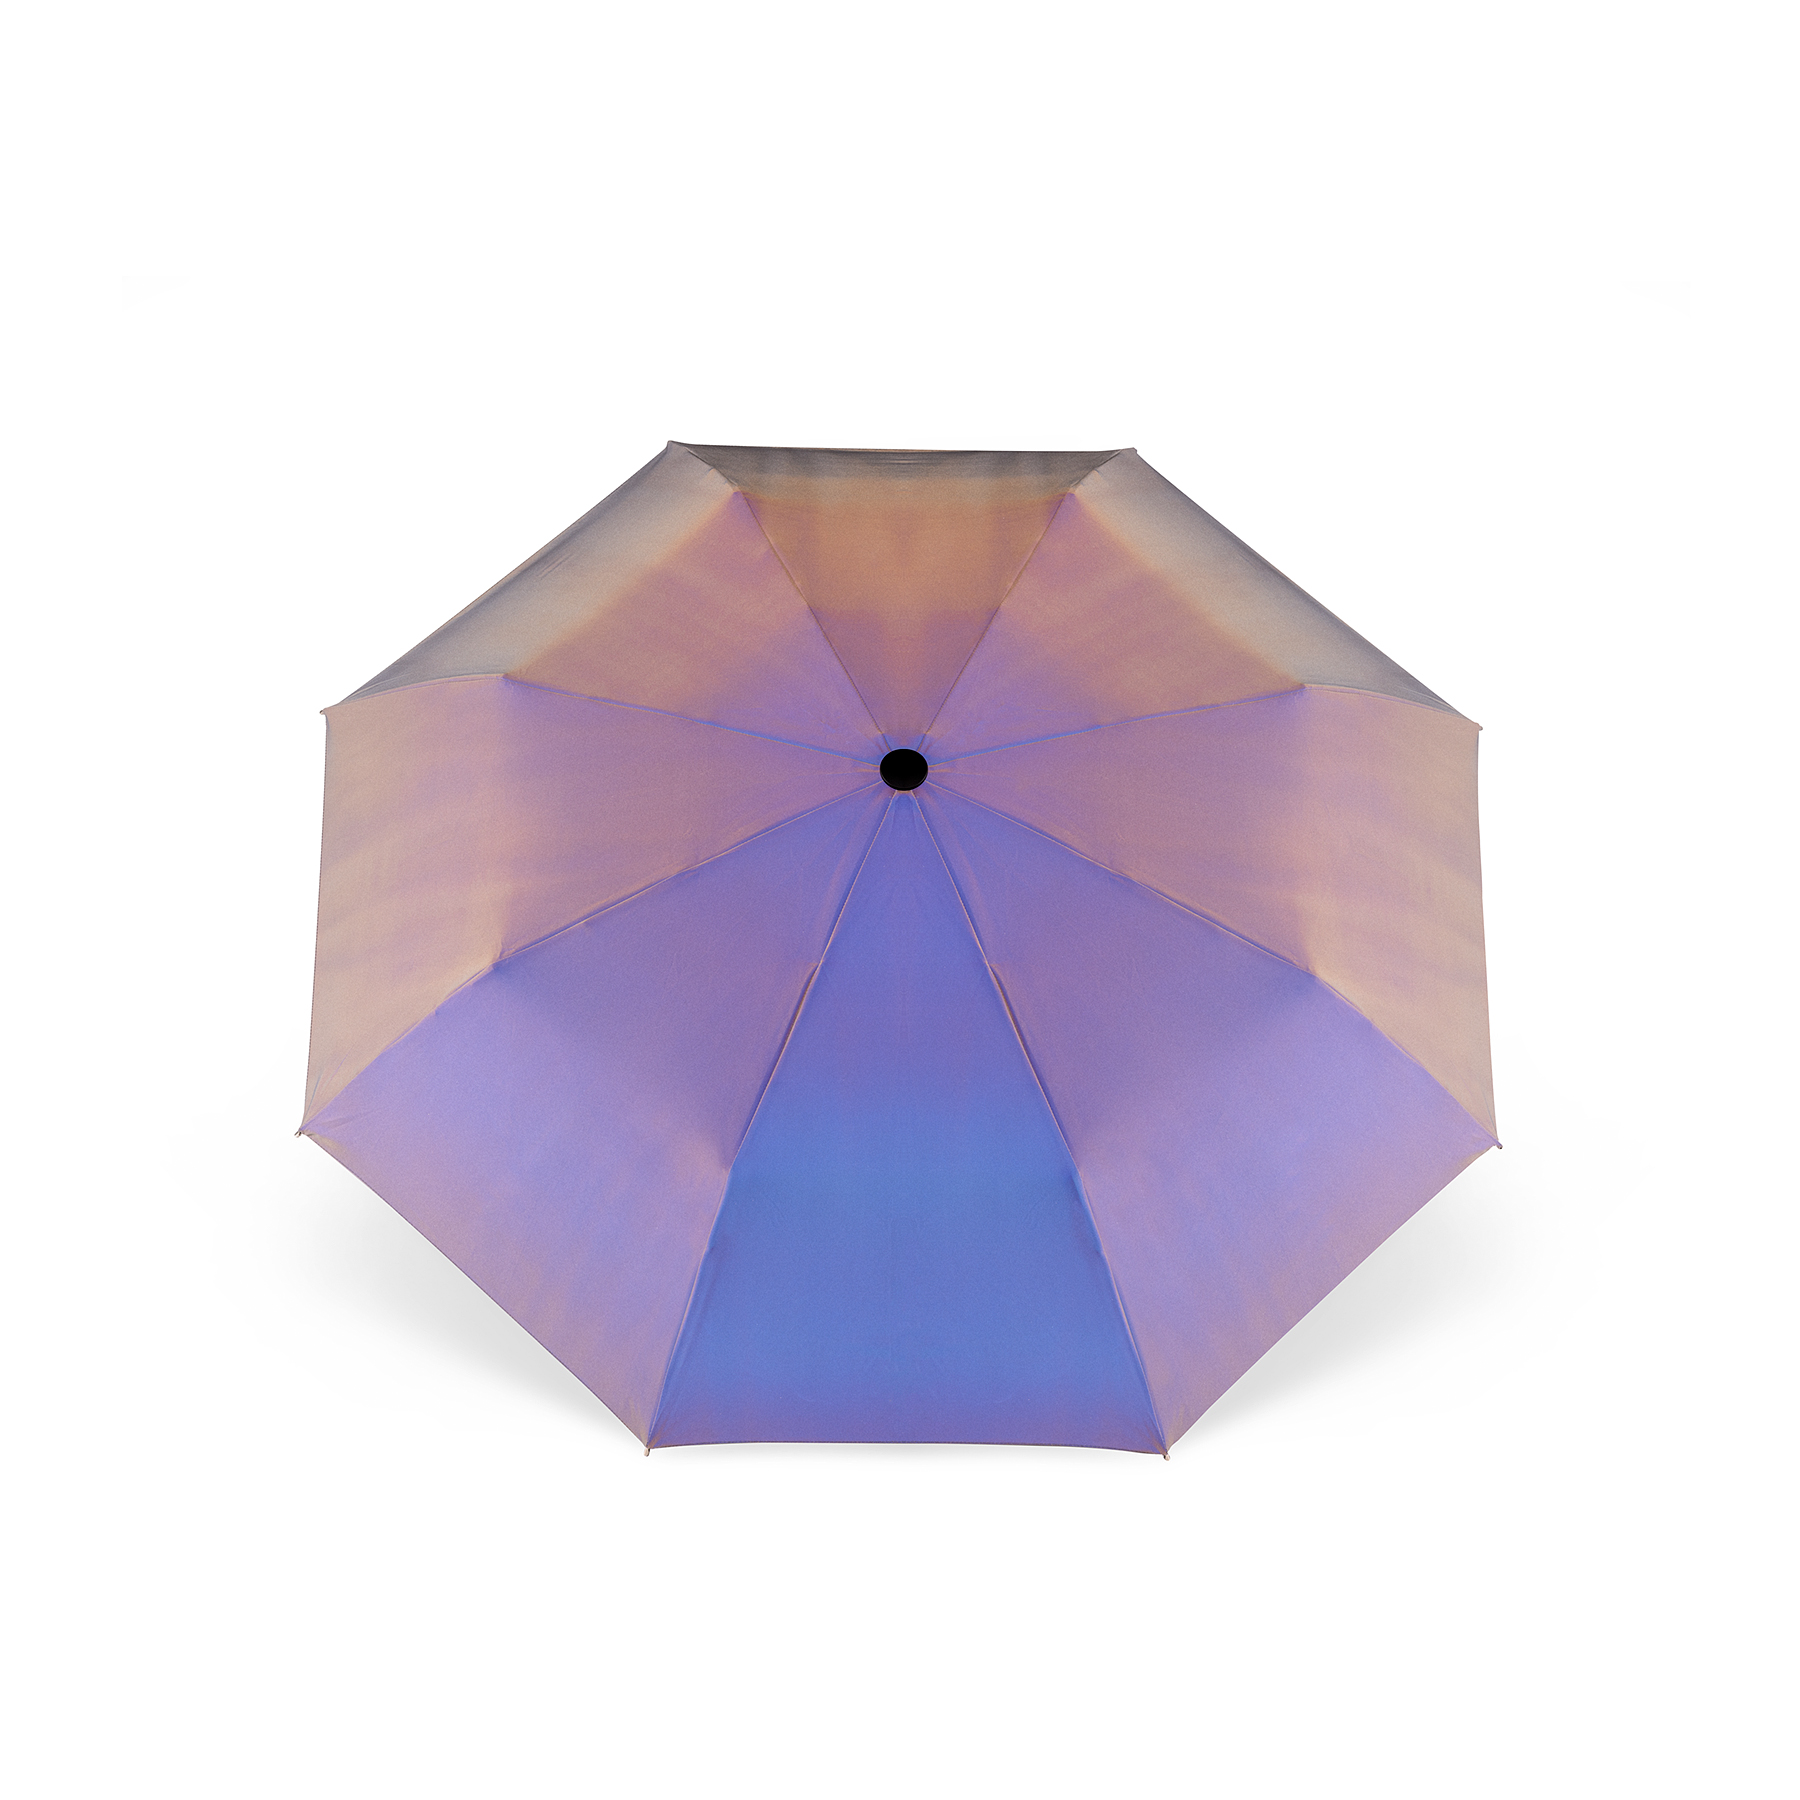 Reflective Umbrella